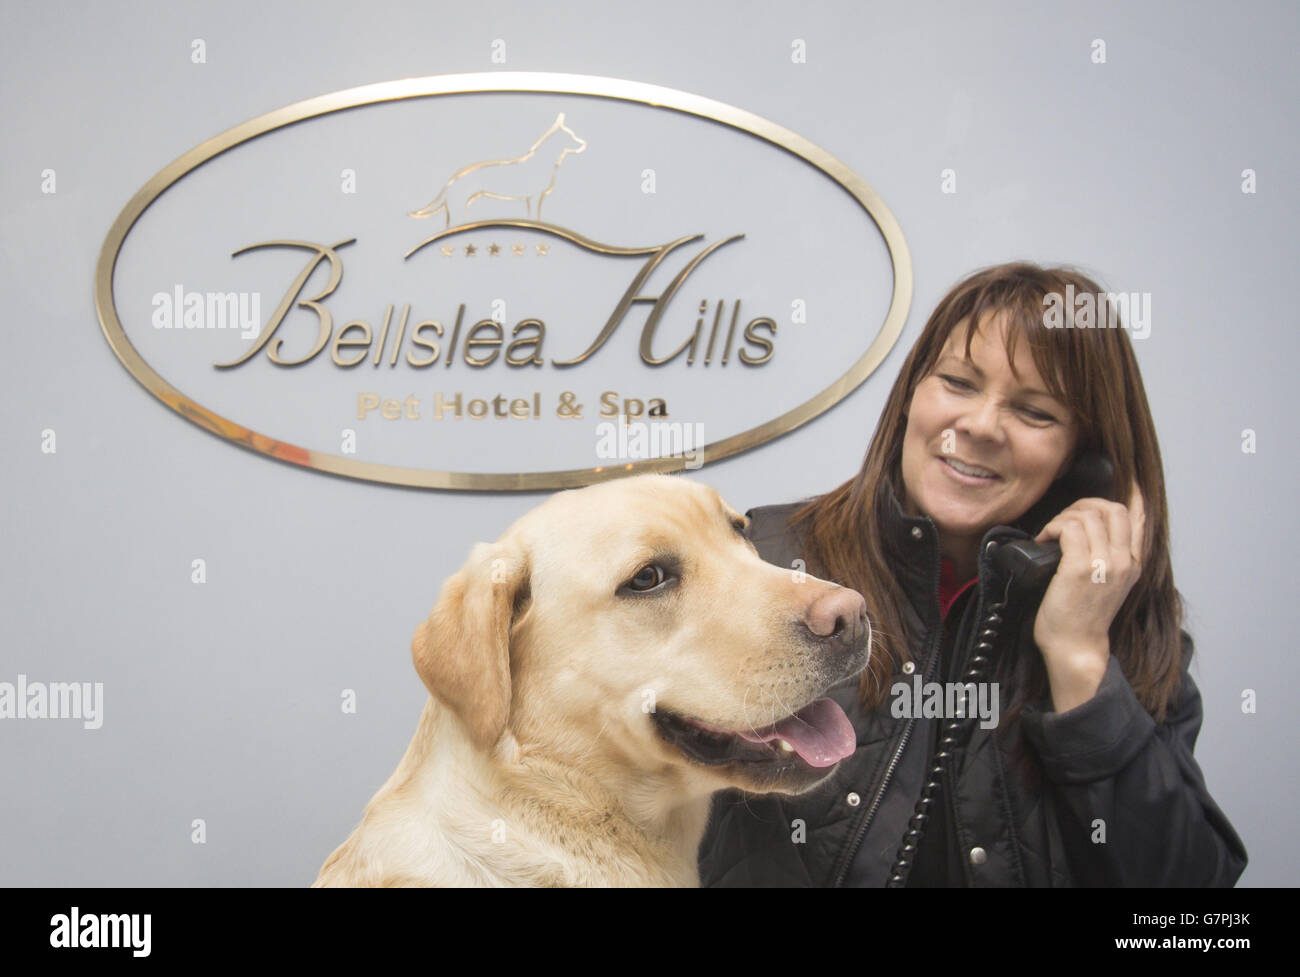 Bellslea Hills PET Hotel and Spa.Directeur Nanette Aitken et Lily the Labrador à la réception, au Bellslea Hills PET Hotel and Spa. Banque D'Images